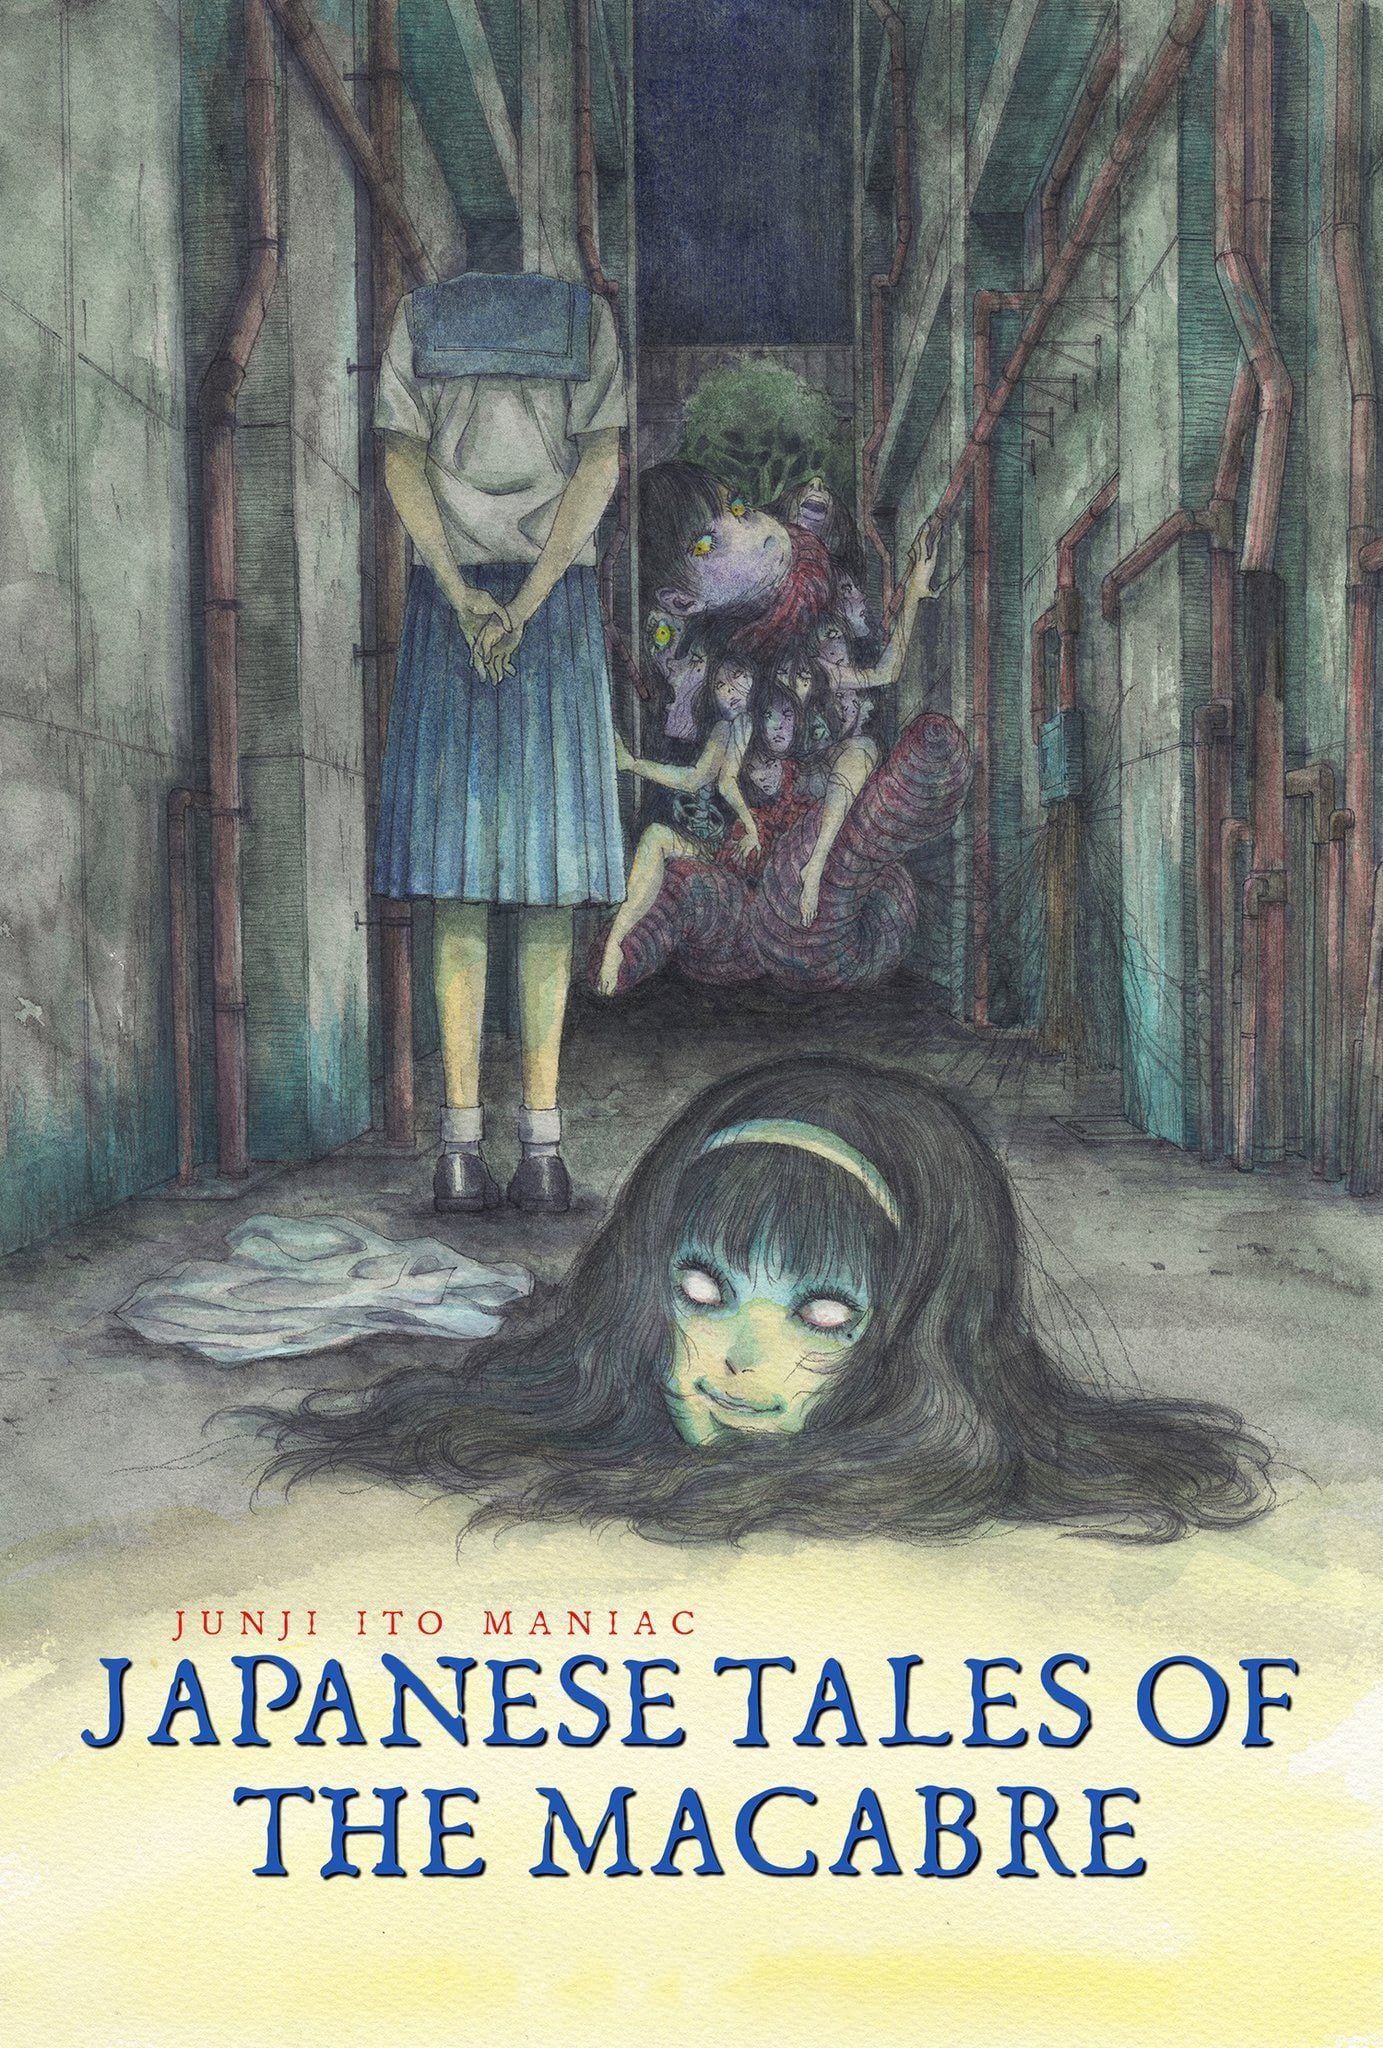 Assistir Junji Ito: Histórias Macabras do Japão